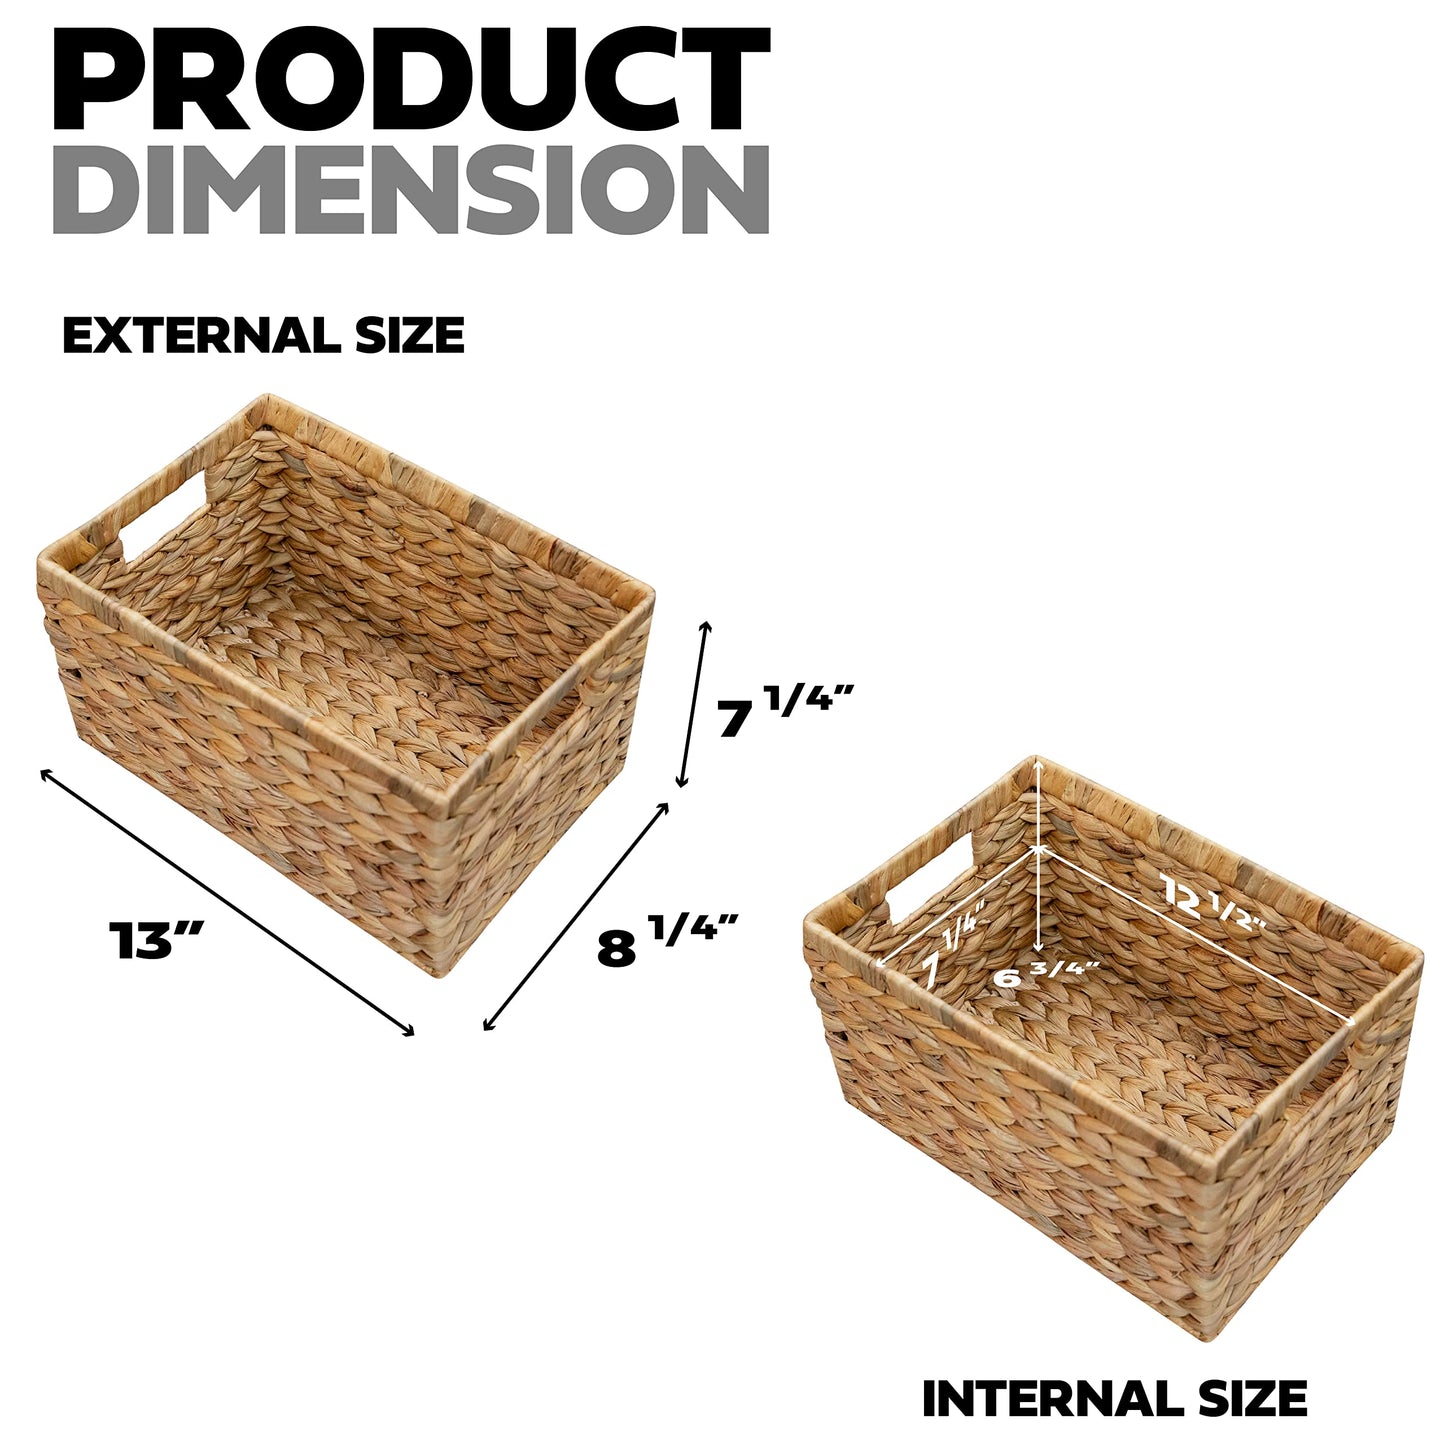 HOMESTEAD: Water Hyacinth Storage Baskets (2 Packs)